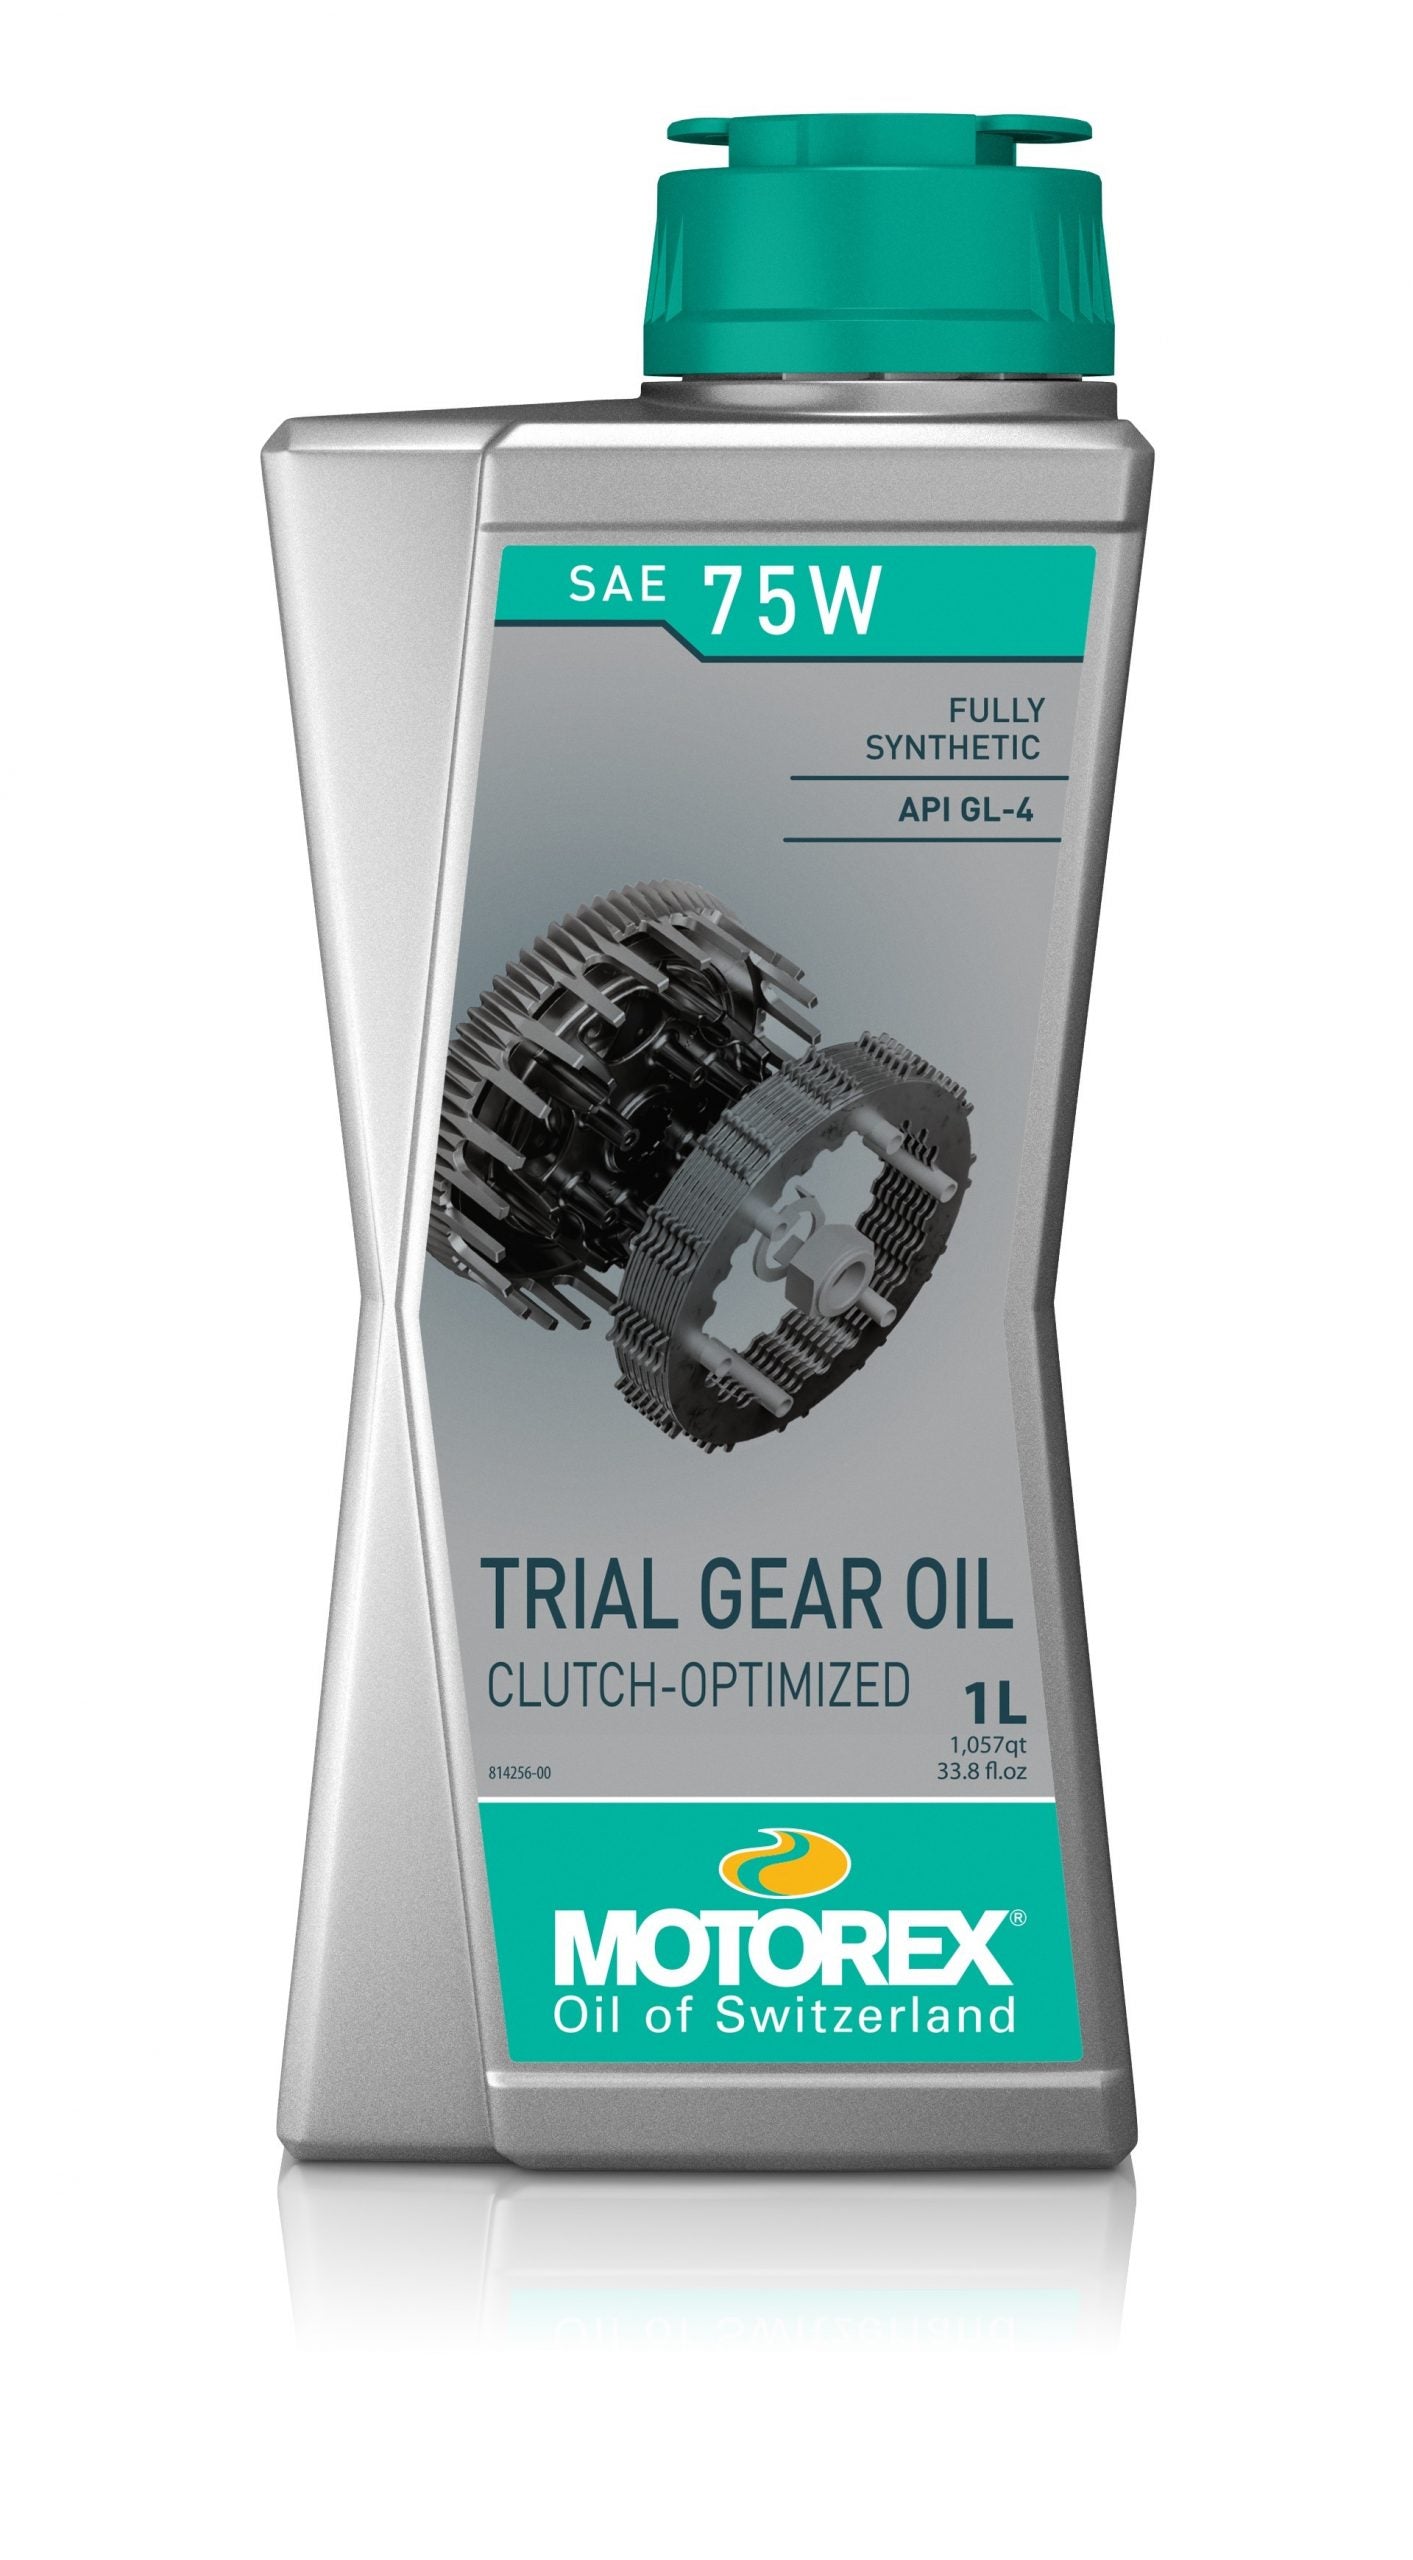 Motorex Trials Gear Oil 75w Fully Synthetic 1 Litre Oil